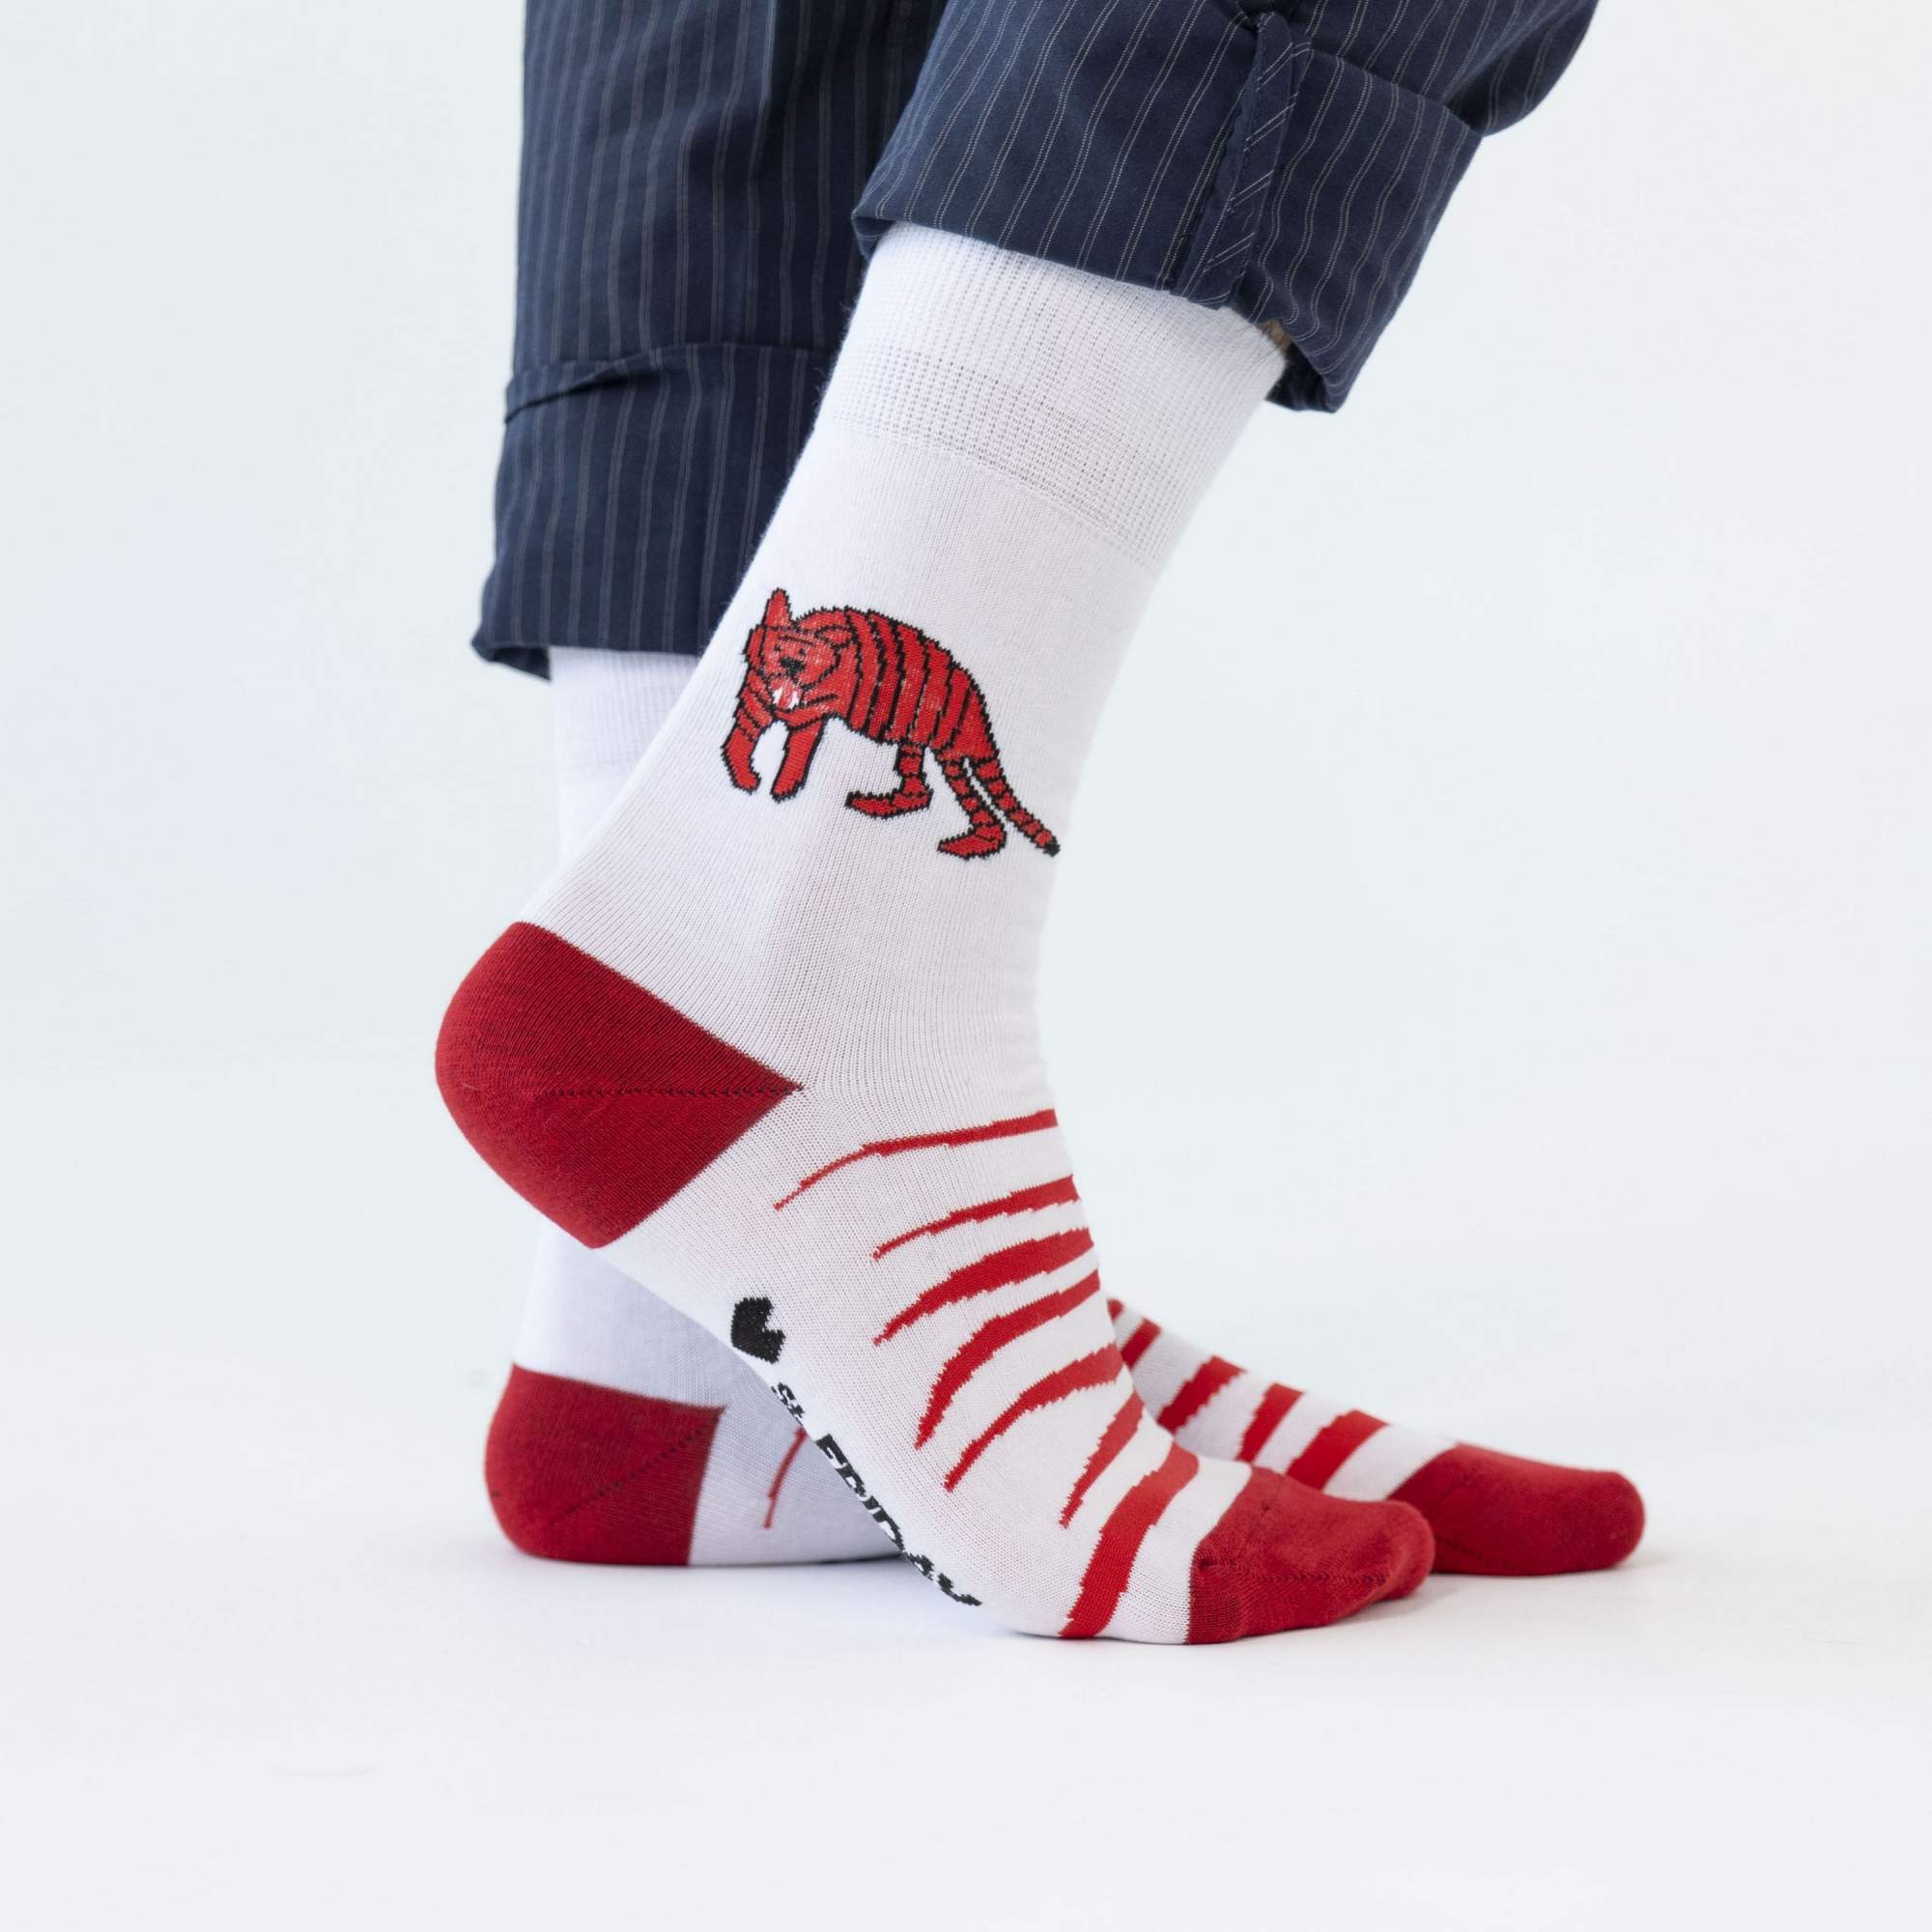 Носки St. Friday Socks anton-1077-02 разноцветные 42-46